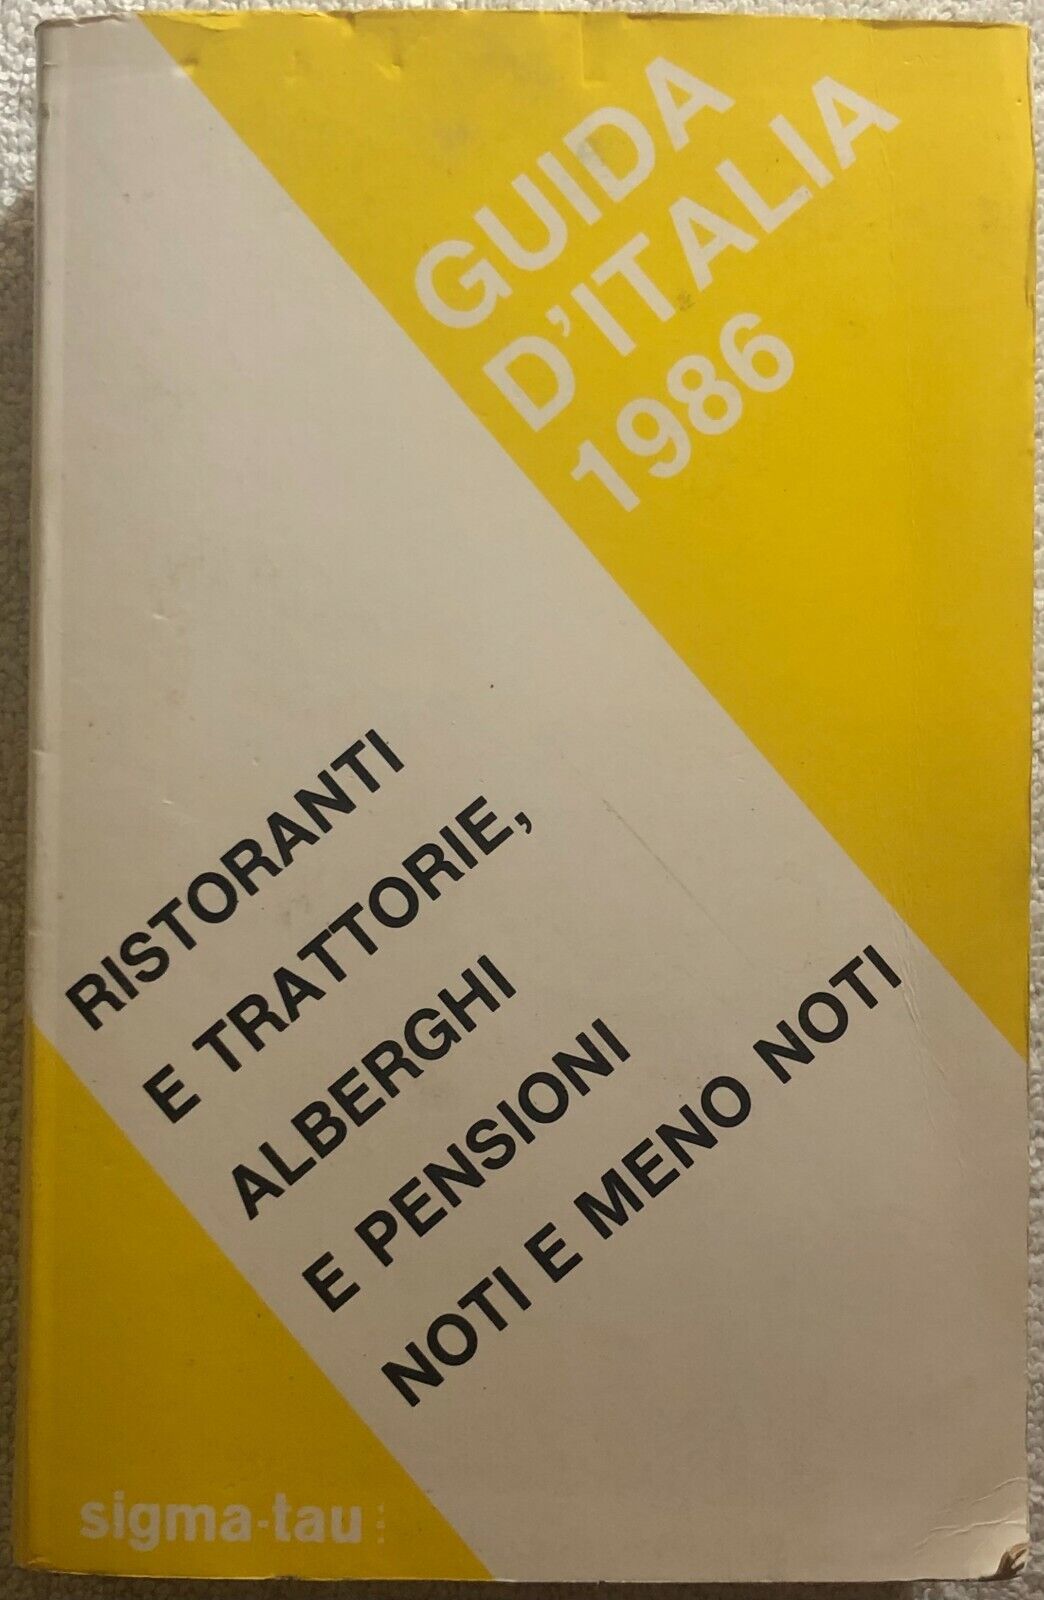 Guida d'Italia 1986 di Aa.vv.,  1986,  Sigma-tau